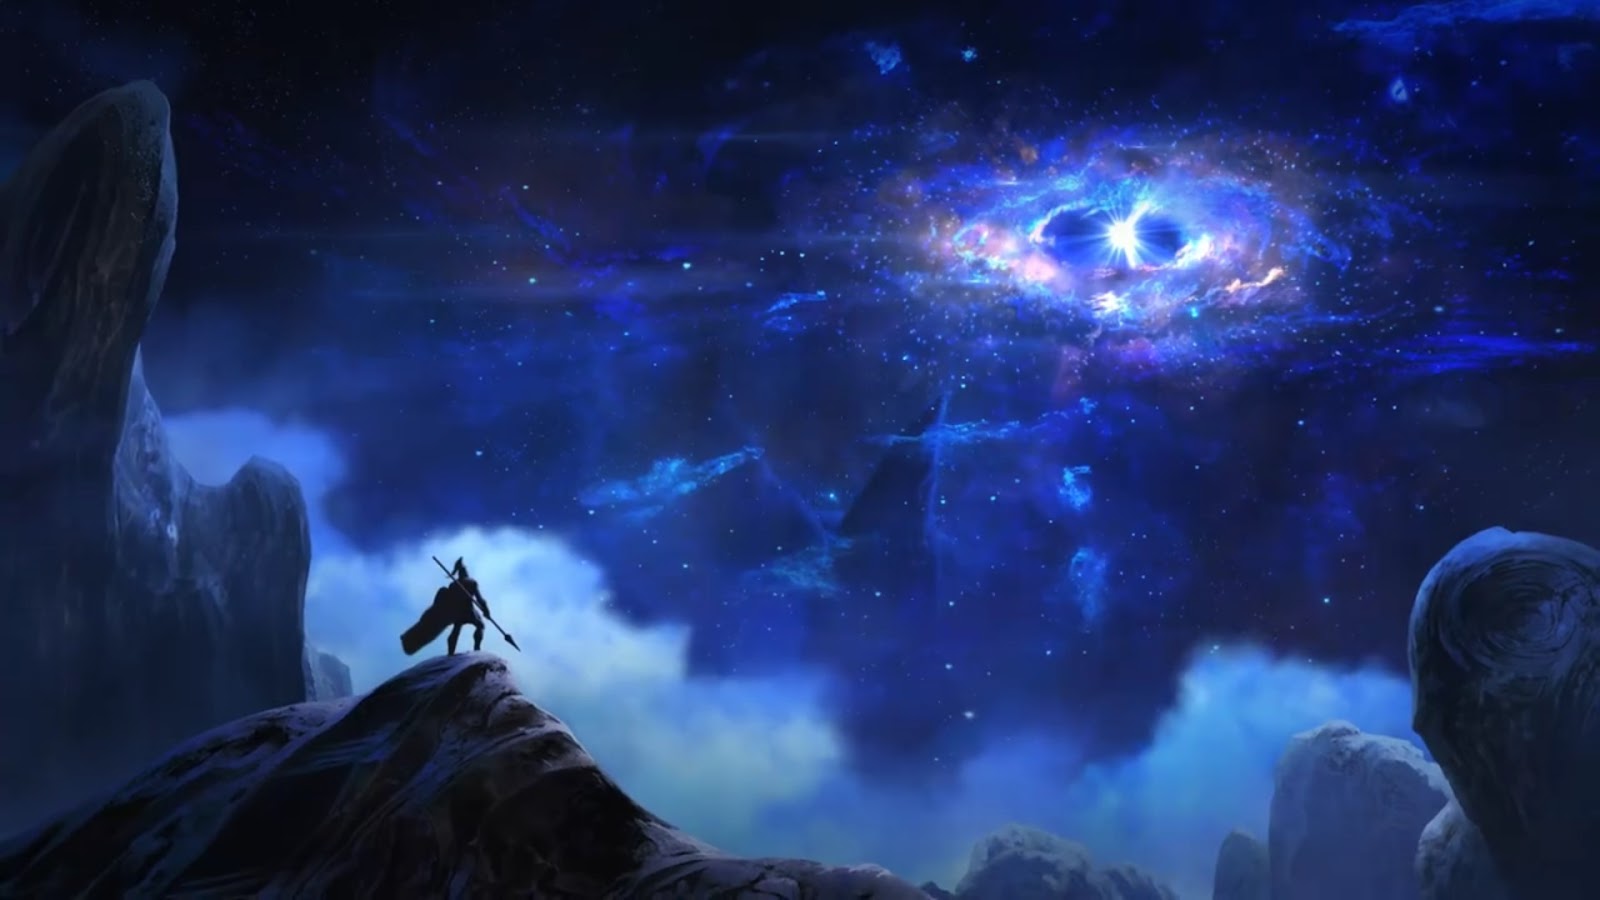 官方神秘预告视频潘森仰望夜空中的星灵